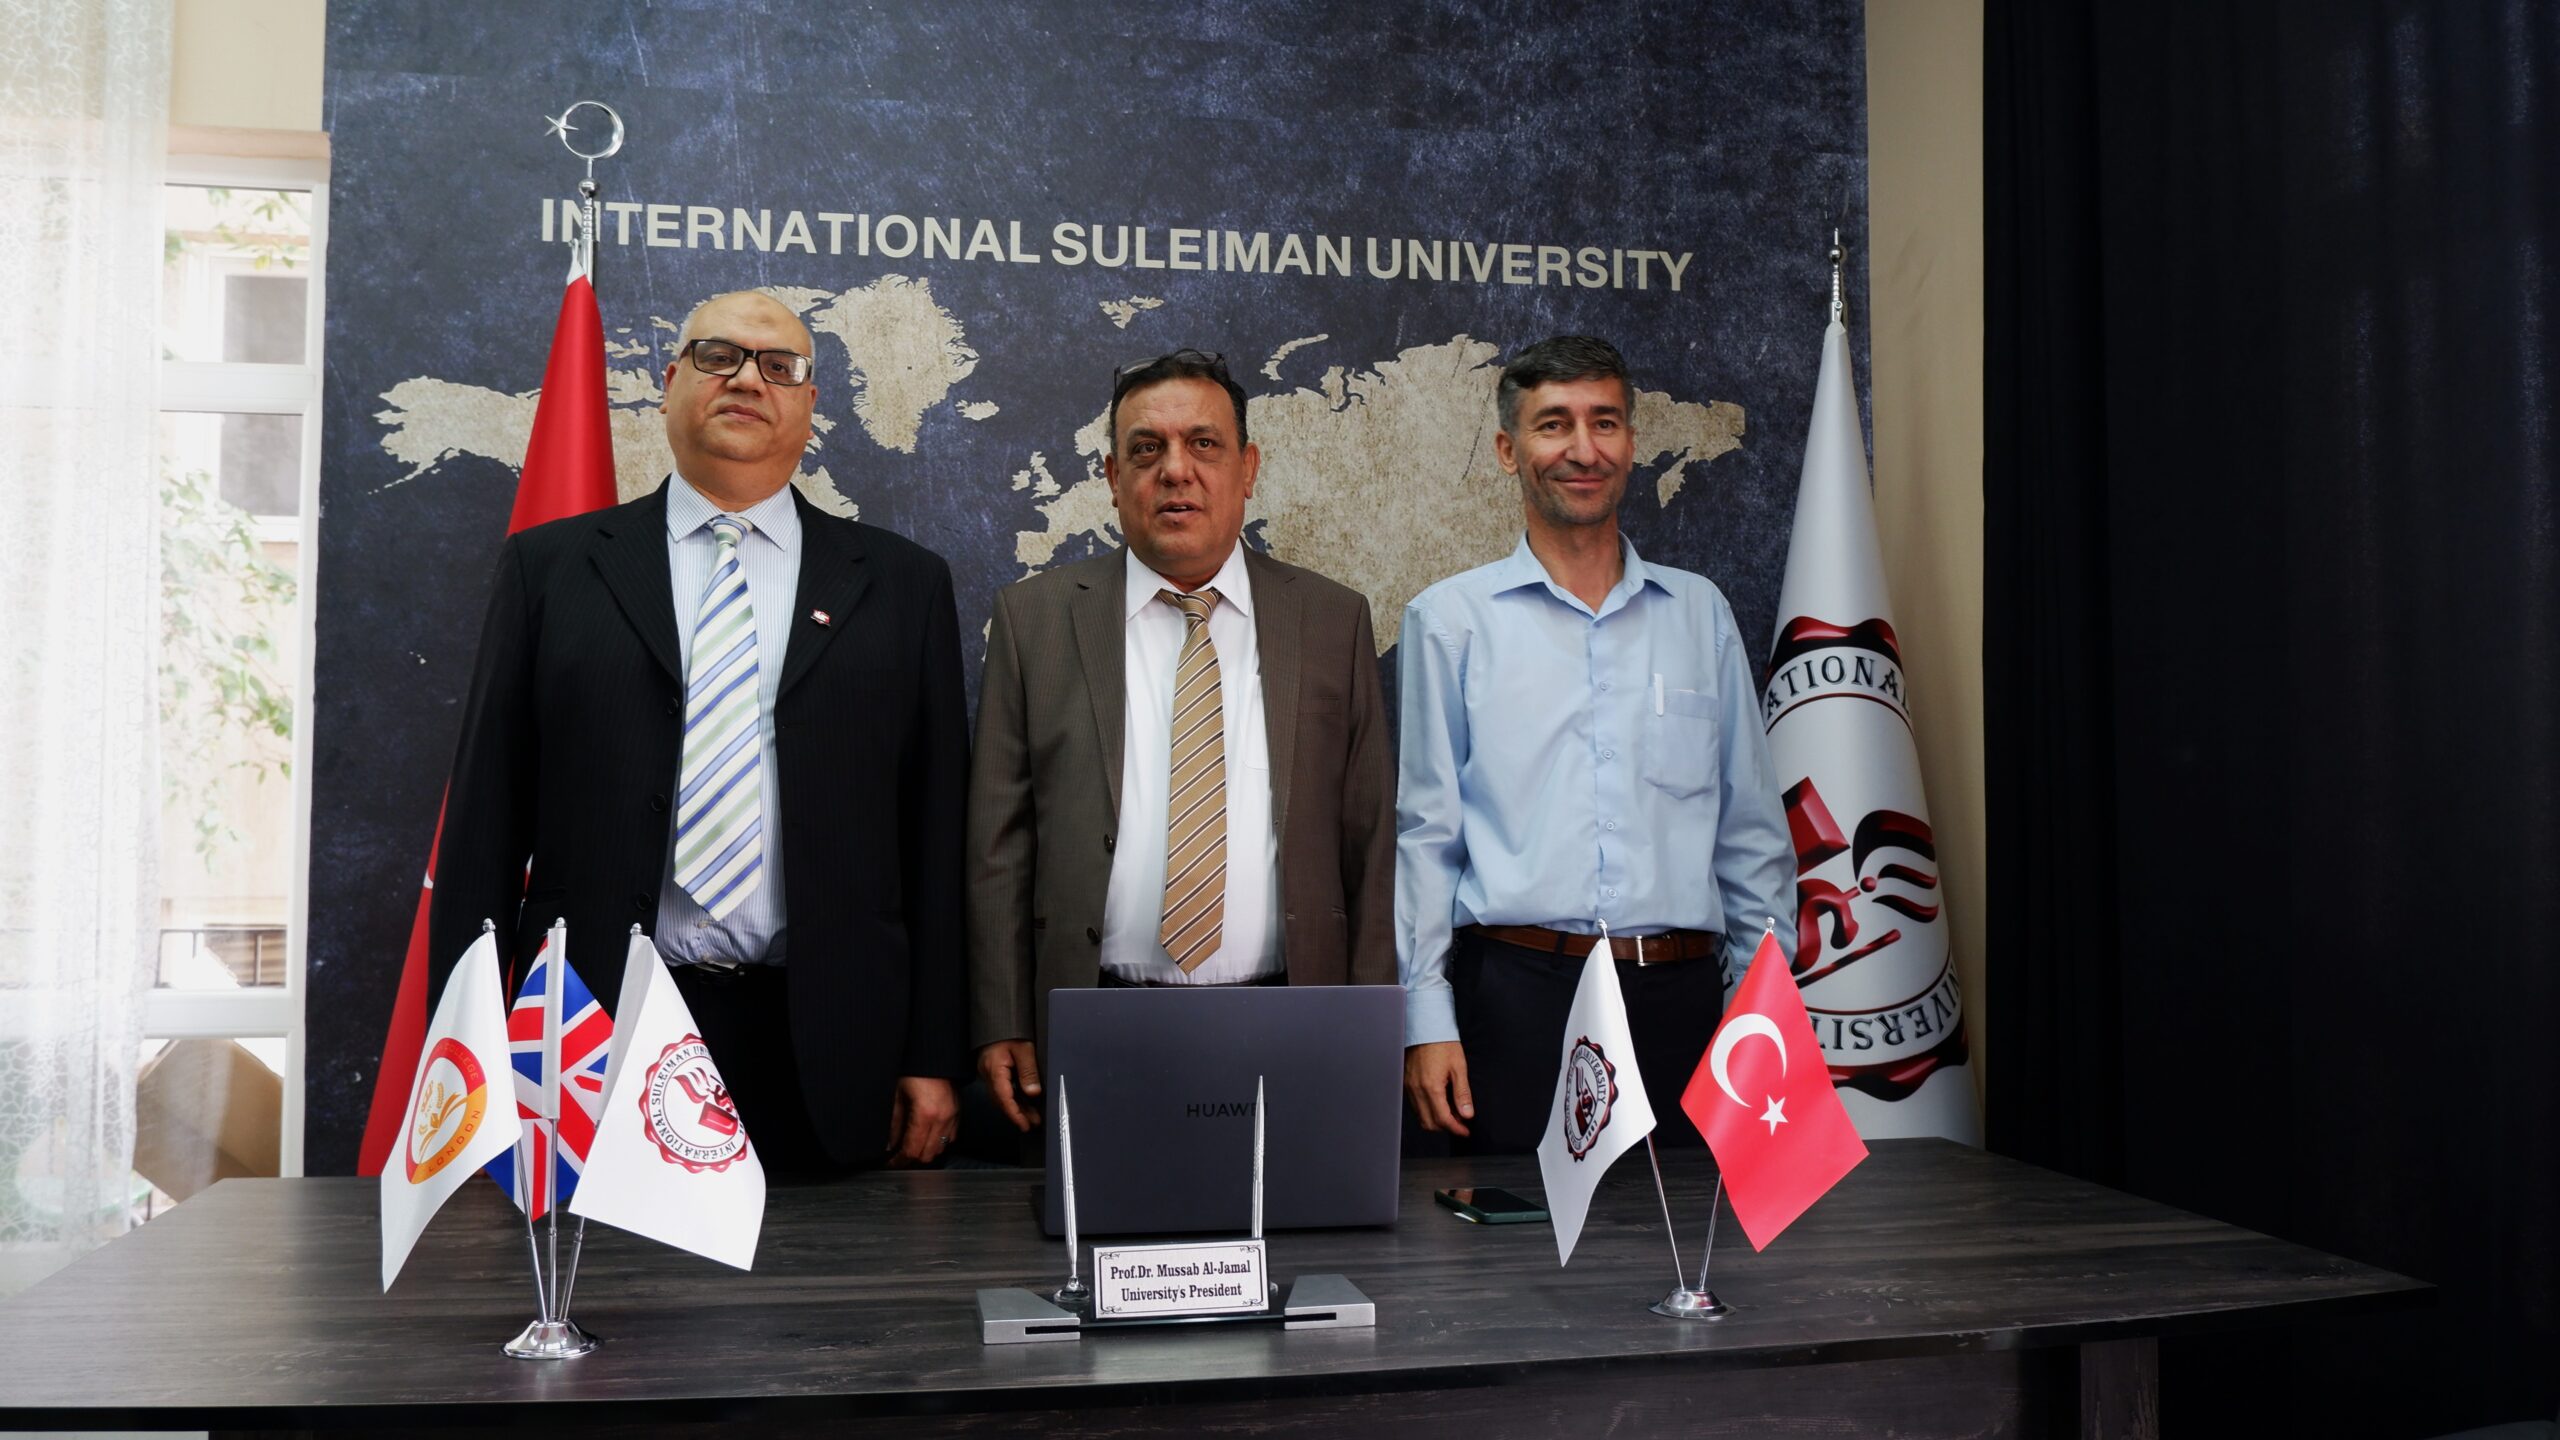 Uluslararası Süleyman Üniversitesi, Geleceğe Yön Vermeye Hazır!